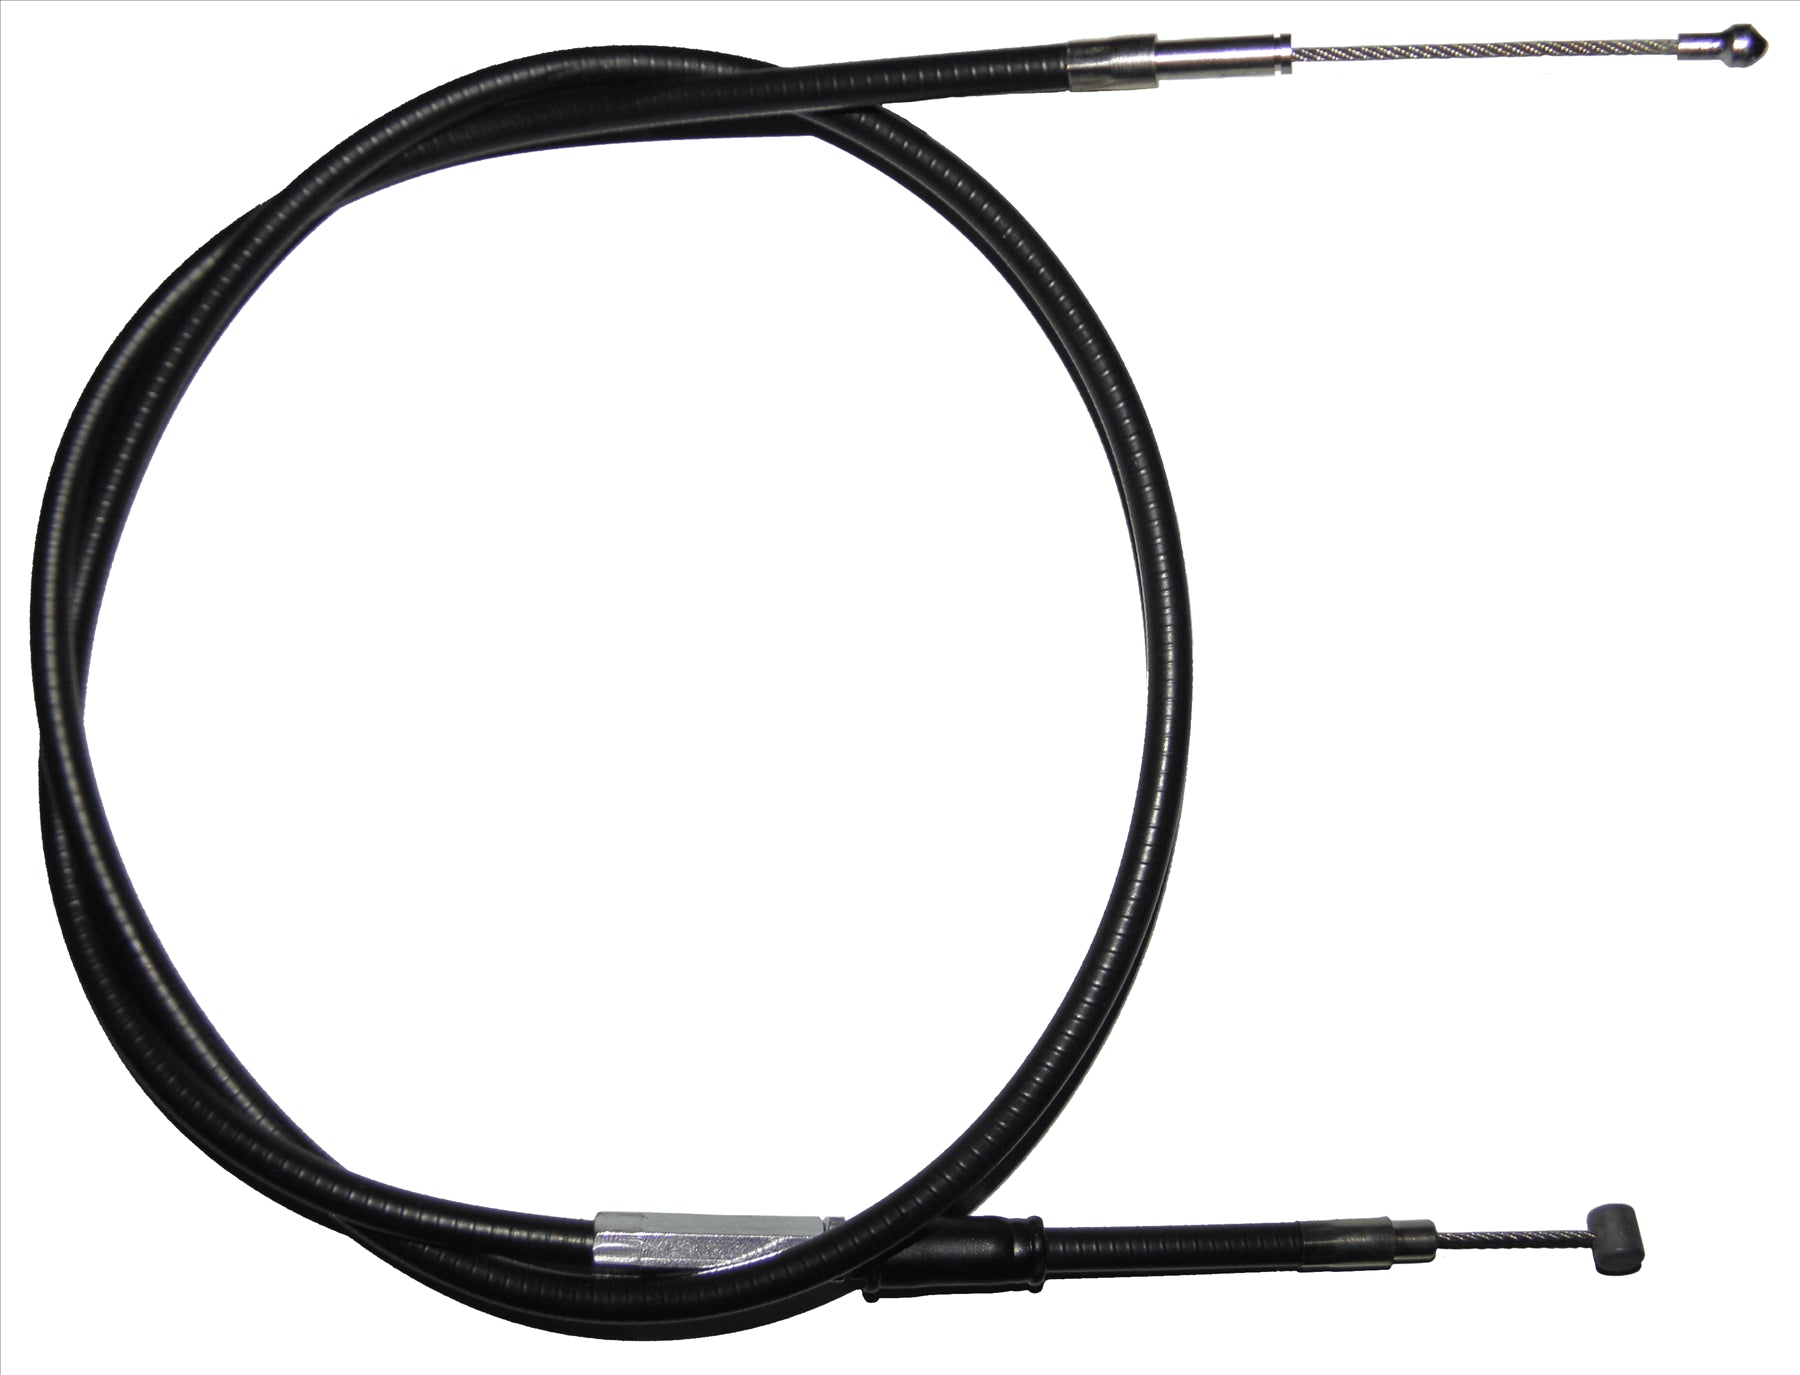 Apico Black Clutch Cable For KTM SX 620 1994-1999